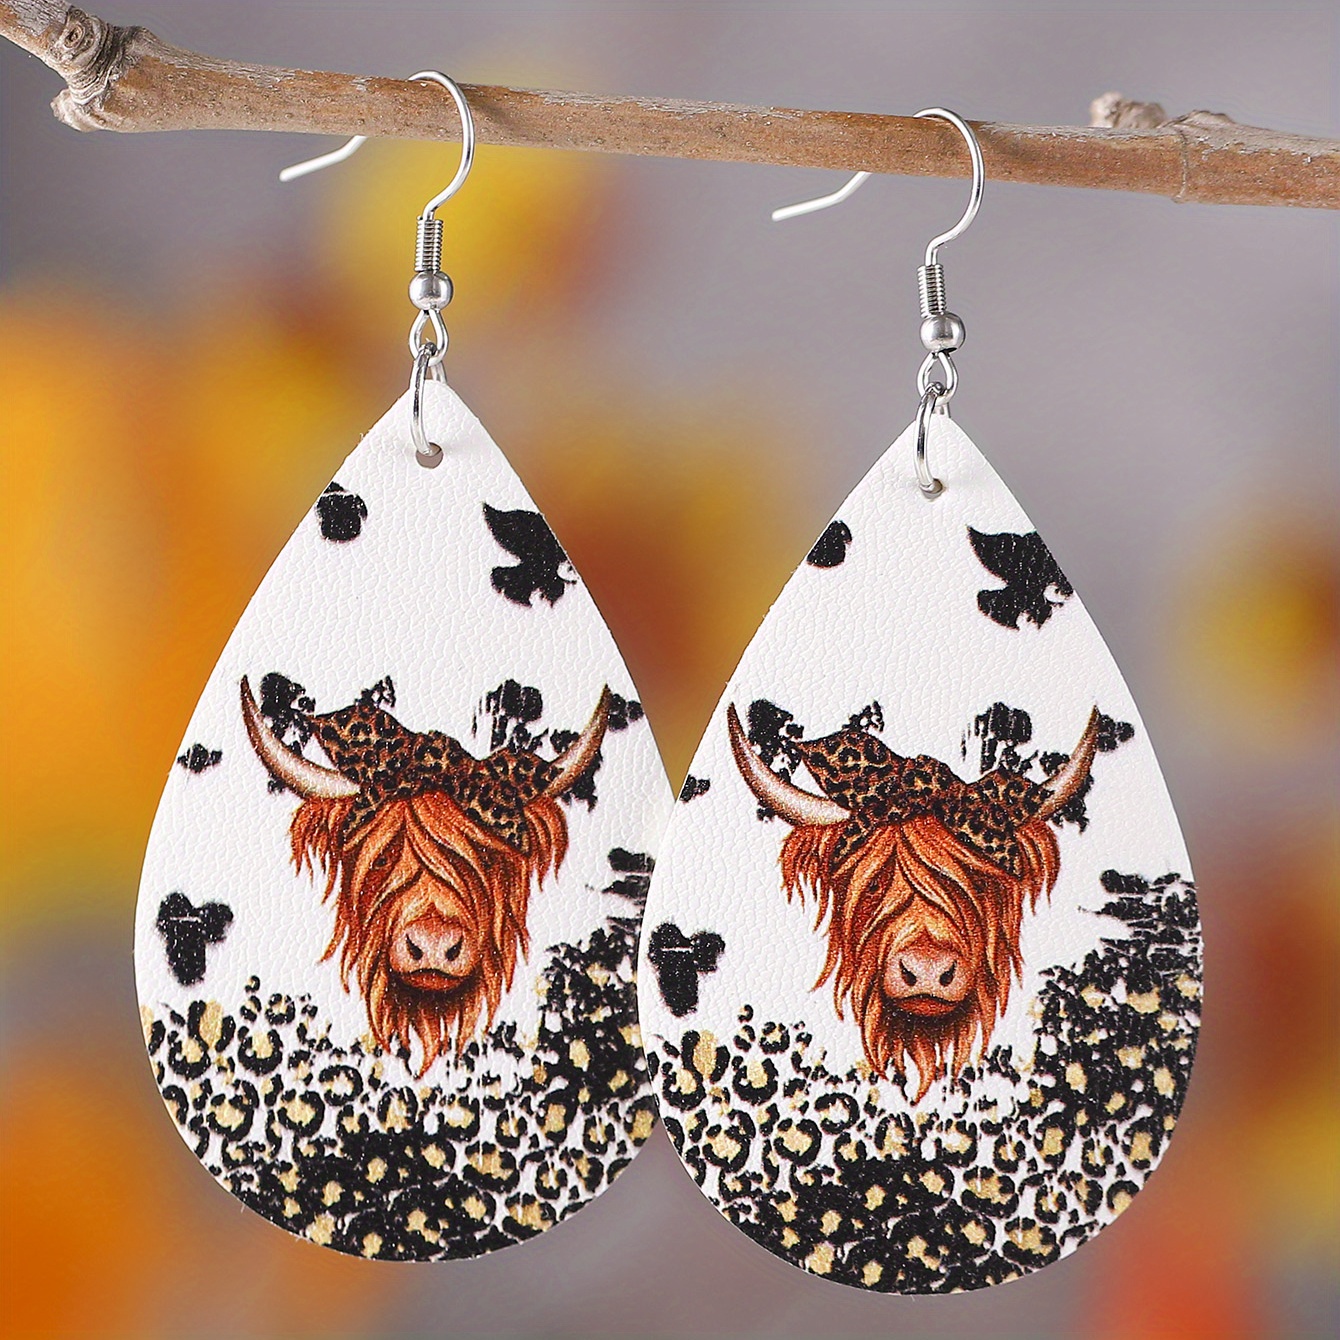 leopard bull head shape pattern pu leather drop hook earrings for women girls ethnic retro style black brown 7